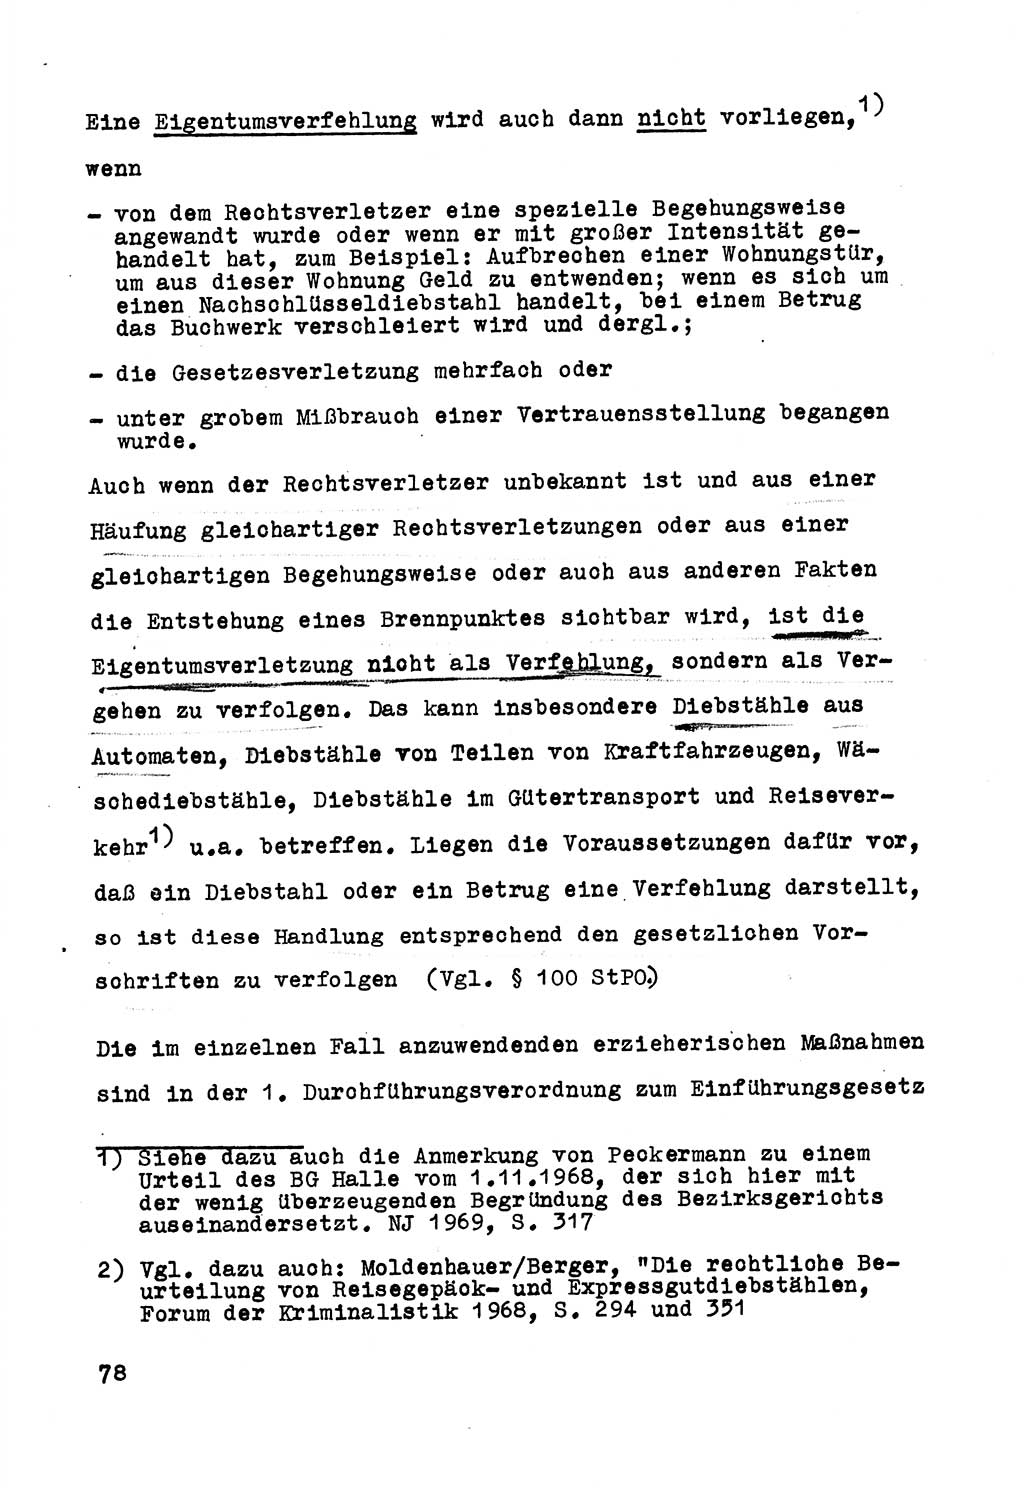 Strafrecht der DDR (Deutsche Demokratische Republik), Besonderer Teil, Lehrmaterial, Heft 5 1970, Seite 78 (Strafr. DDR BT Lehrmat. H. 5 1970, S. 78)